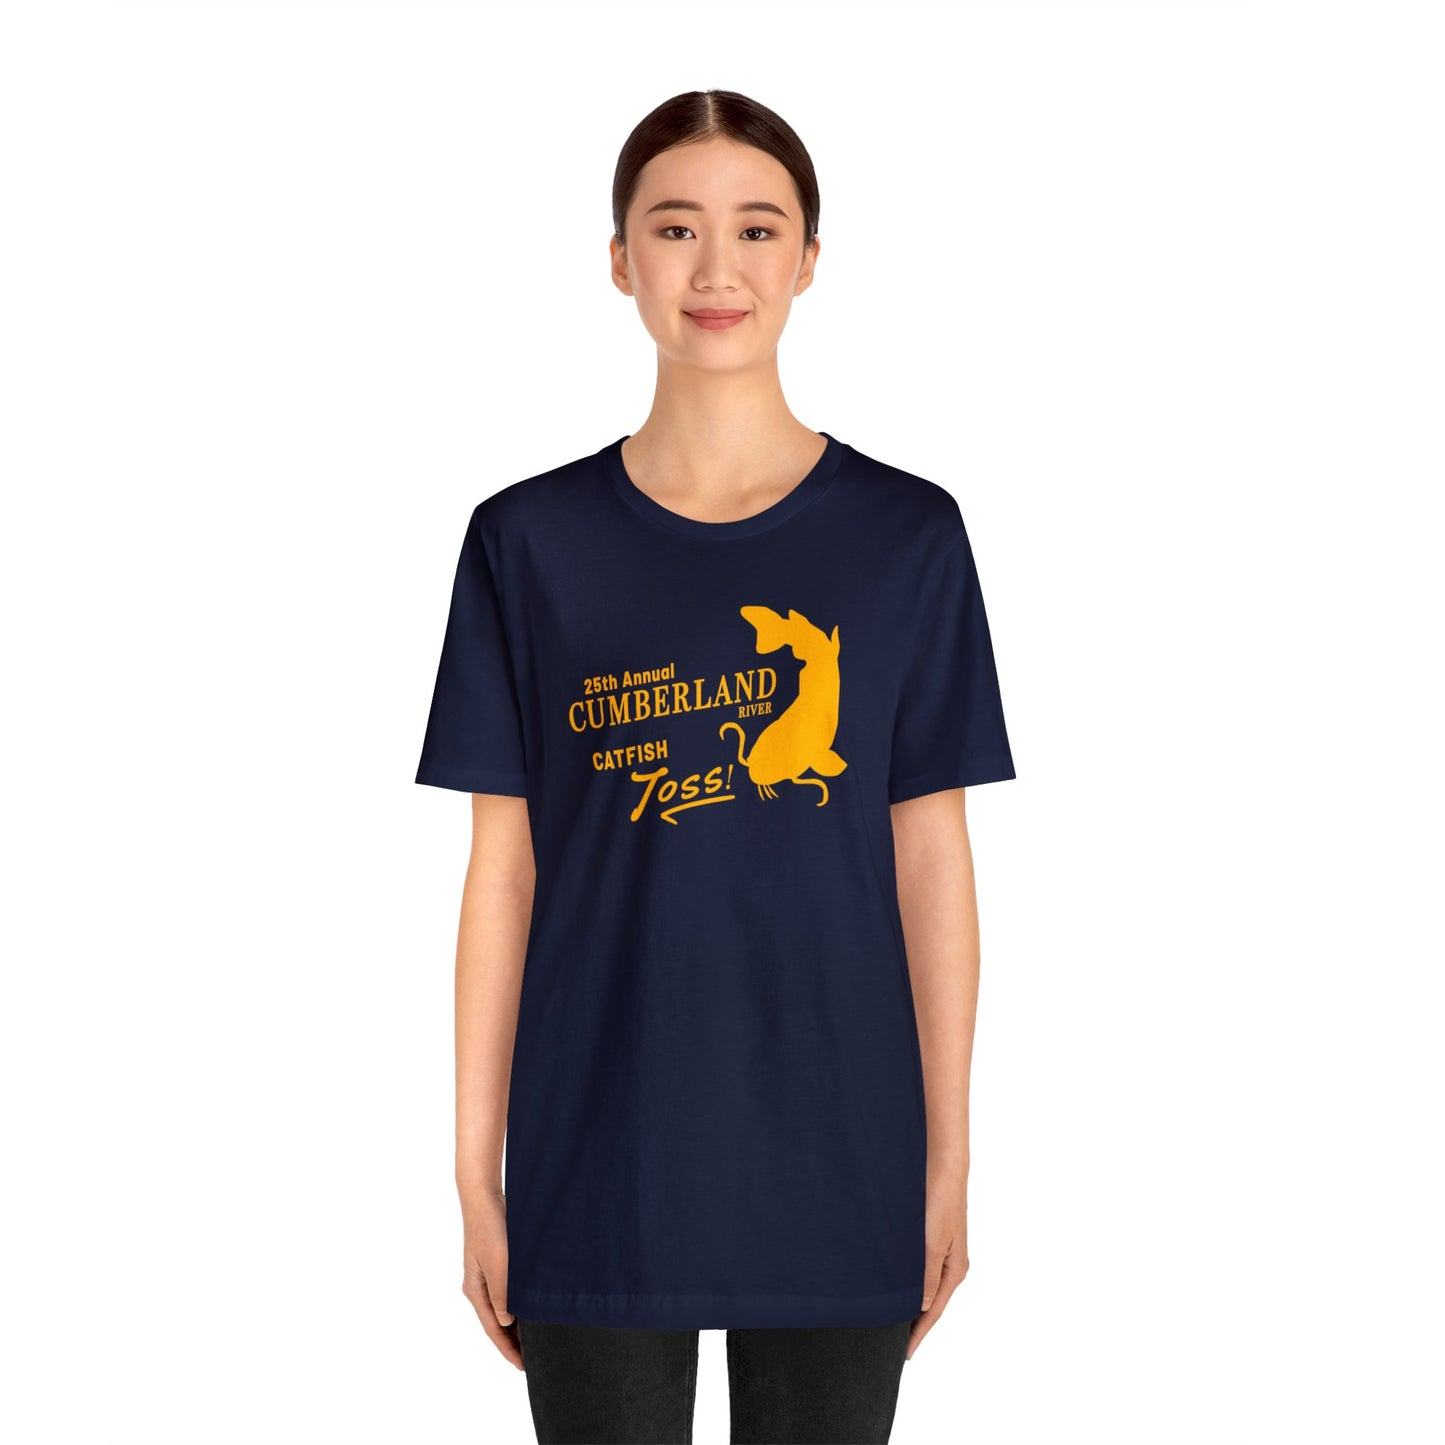 CatFish Toss Event T-shirt